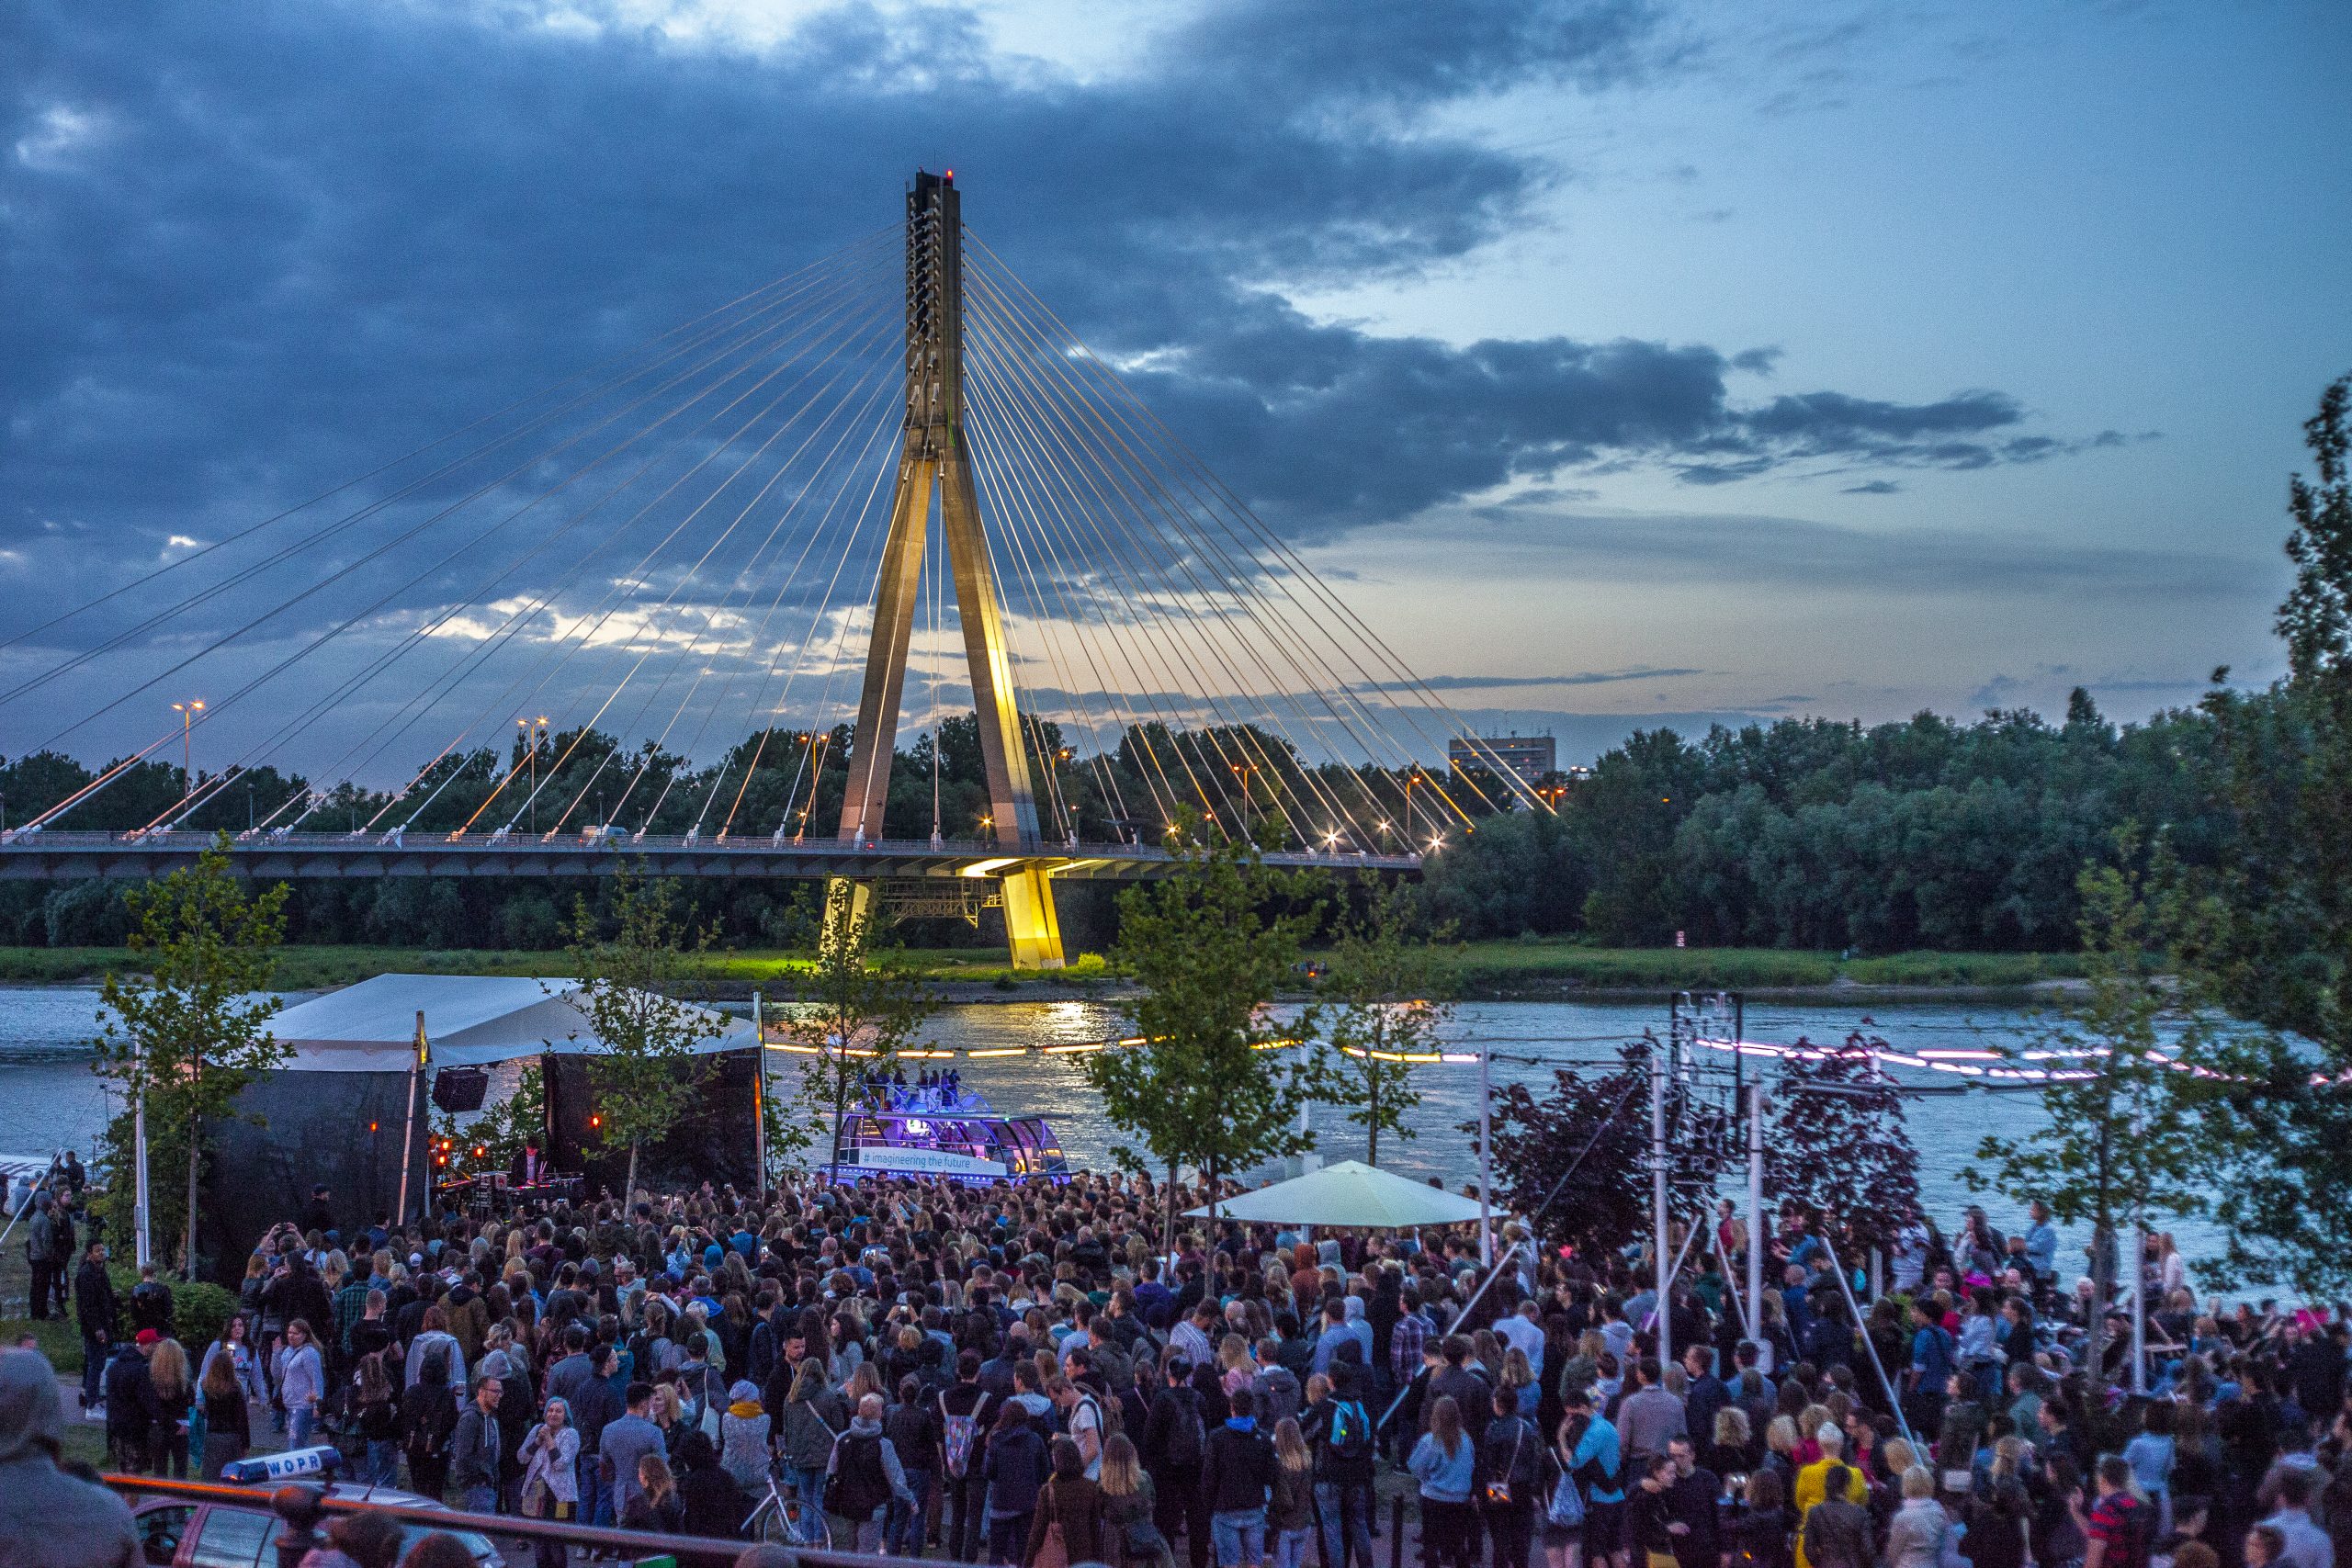 Koncert w lokalu Plac Zabaw nad Wisłą - wieczór, tłum ludzi, w tle Wisła i most Świętokrzyski